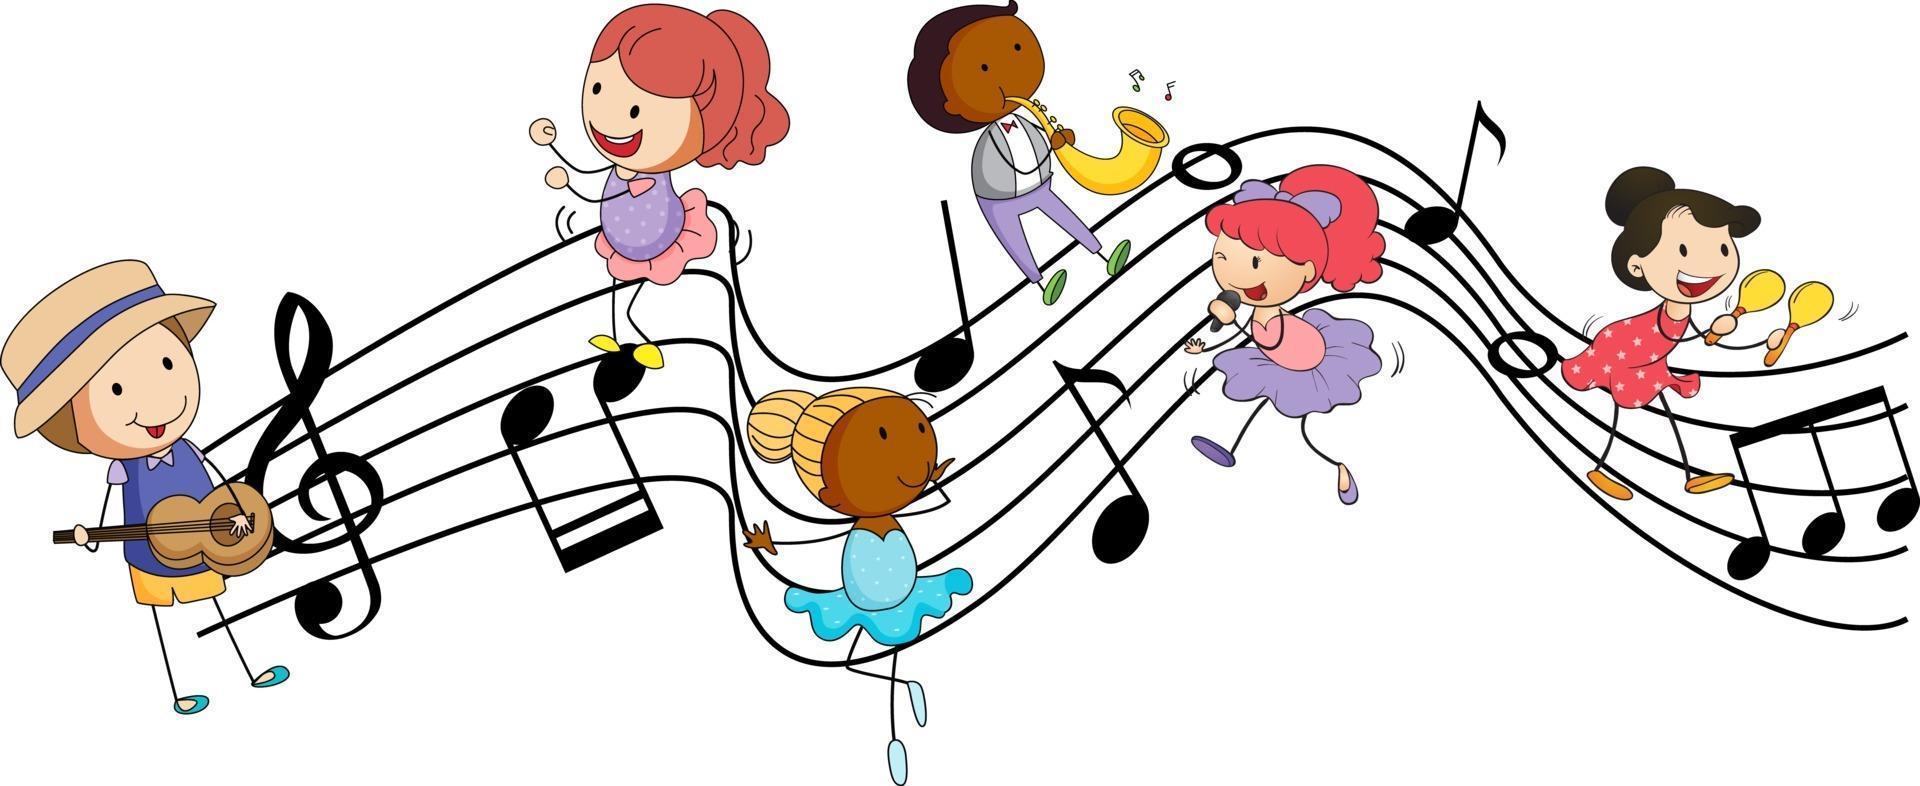 símbolos de melodia musical com muitos personagens de desenhos animados de doodle para crianças vetor